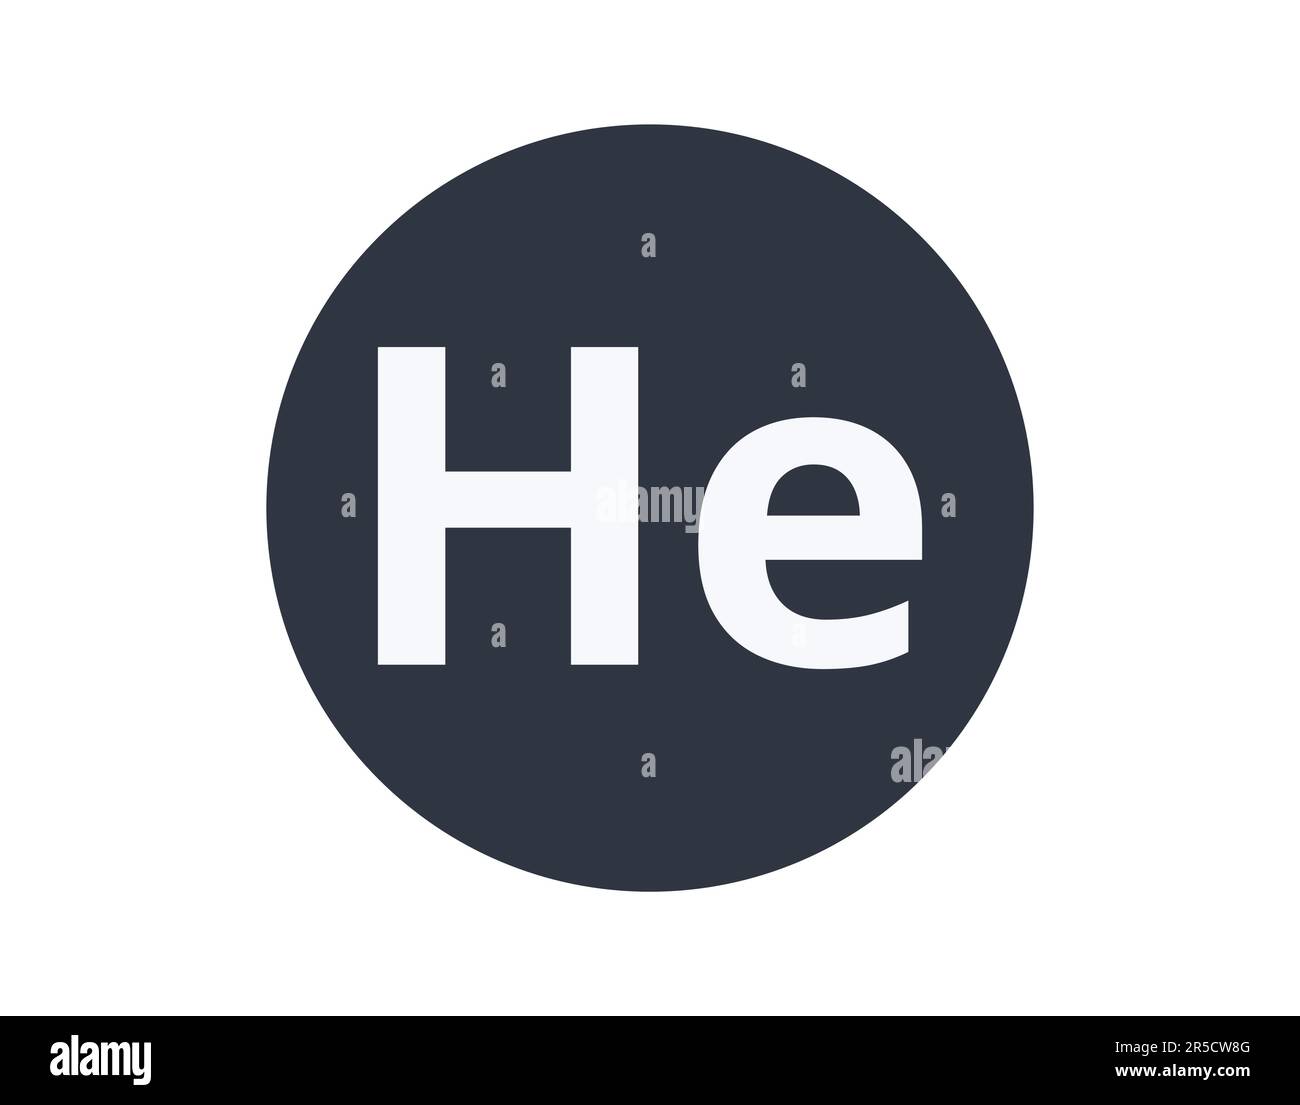 Isoliertes Helium-chemisches Element in einem Kreis. Stock Vektor